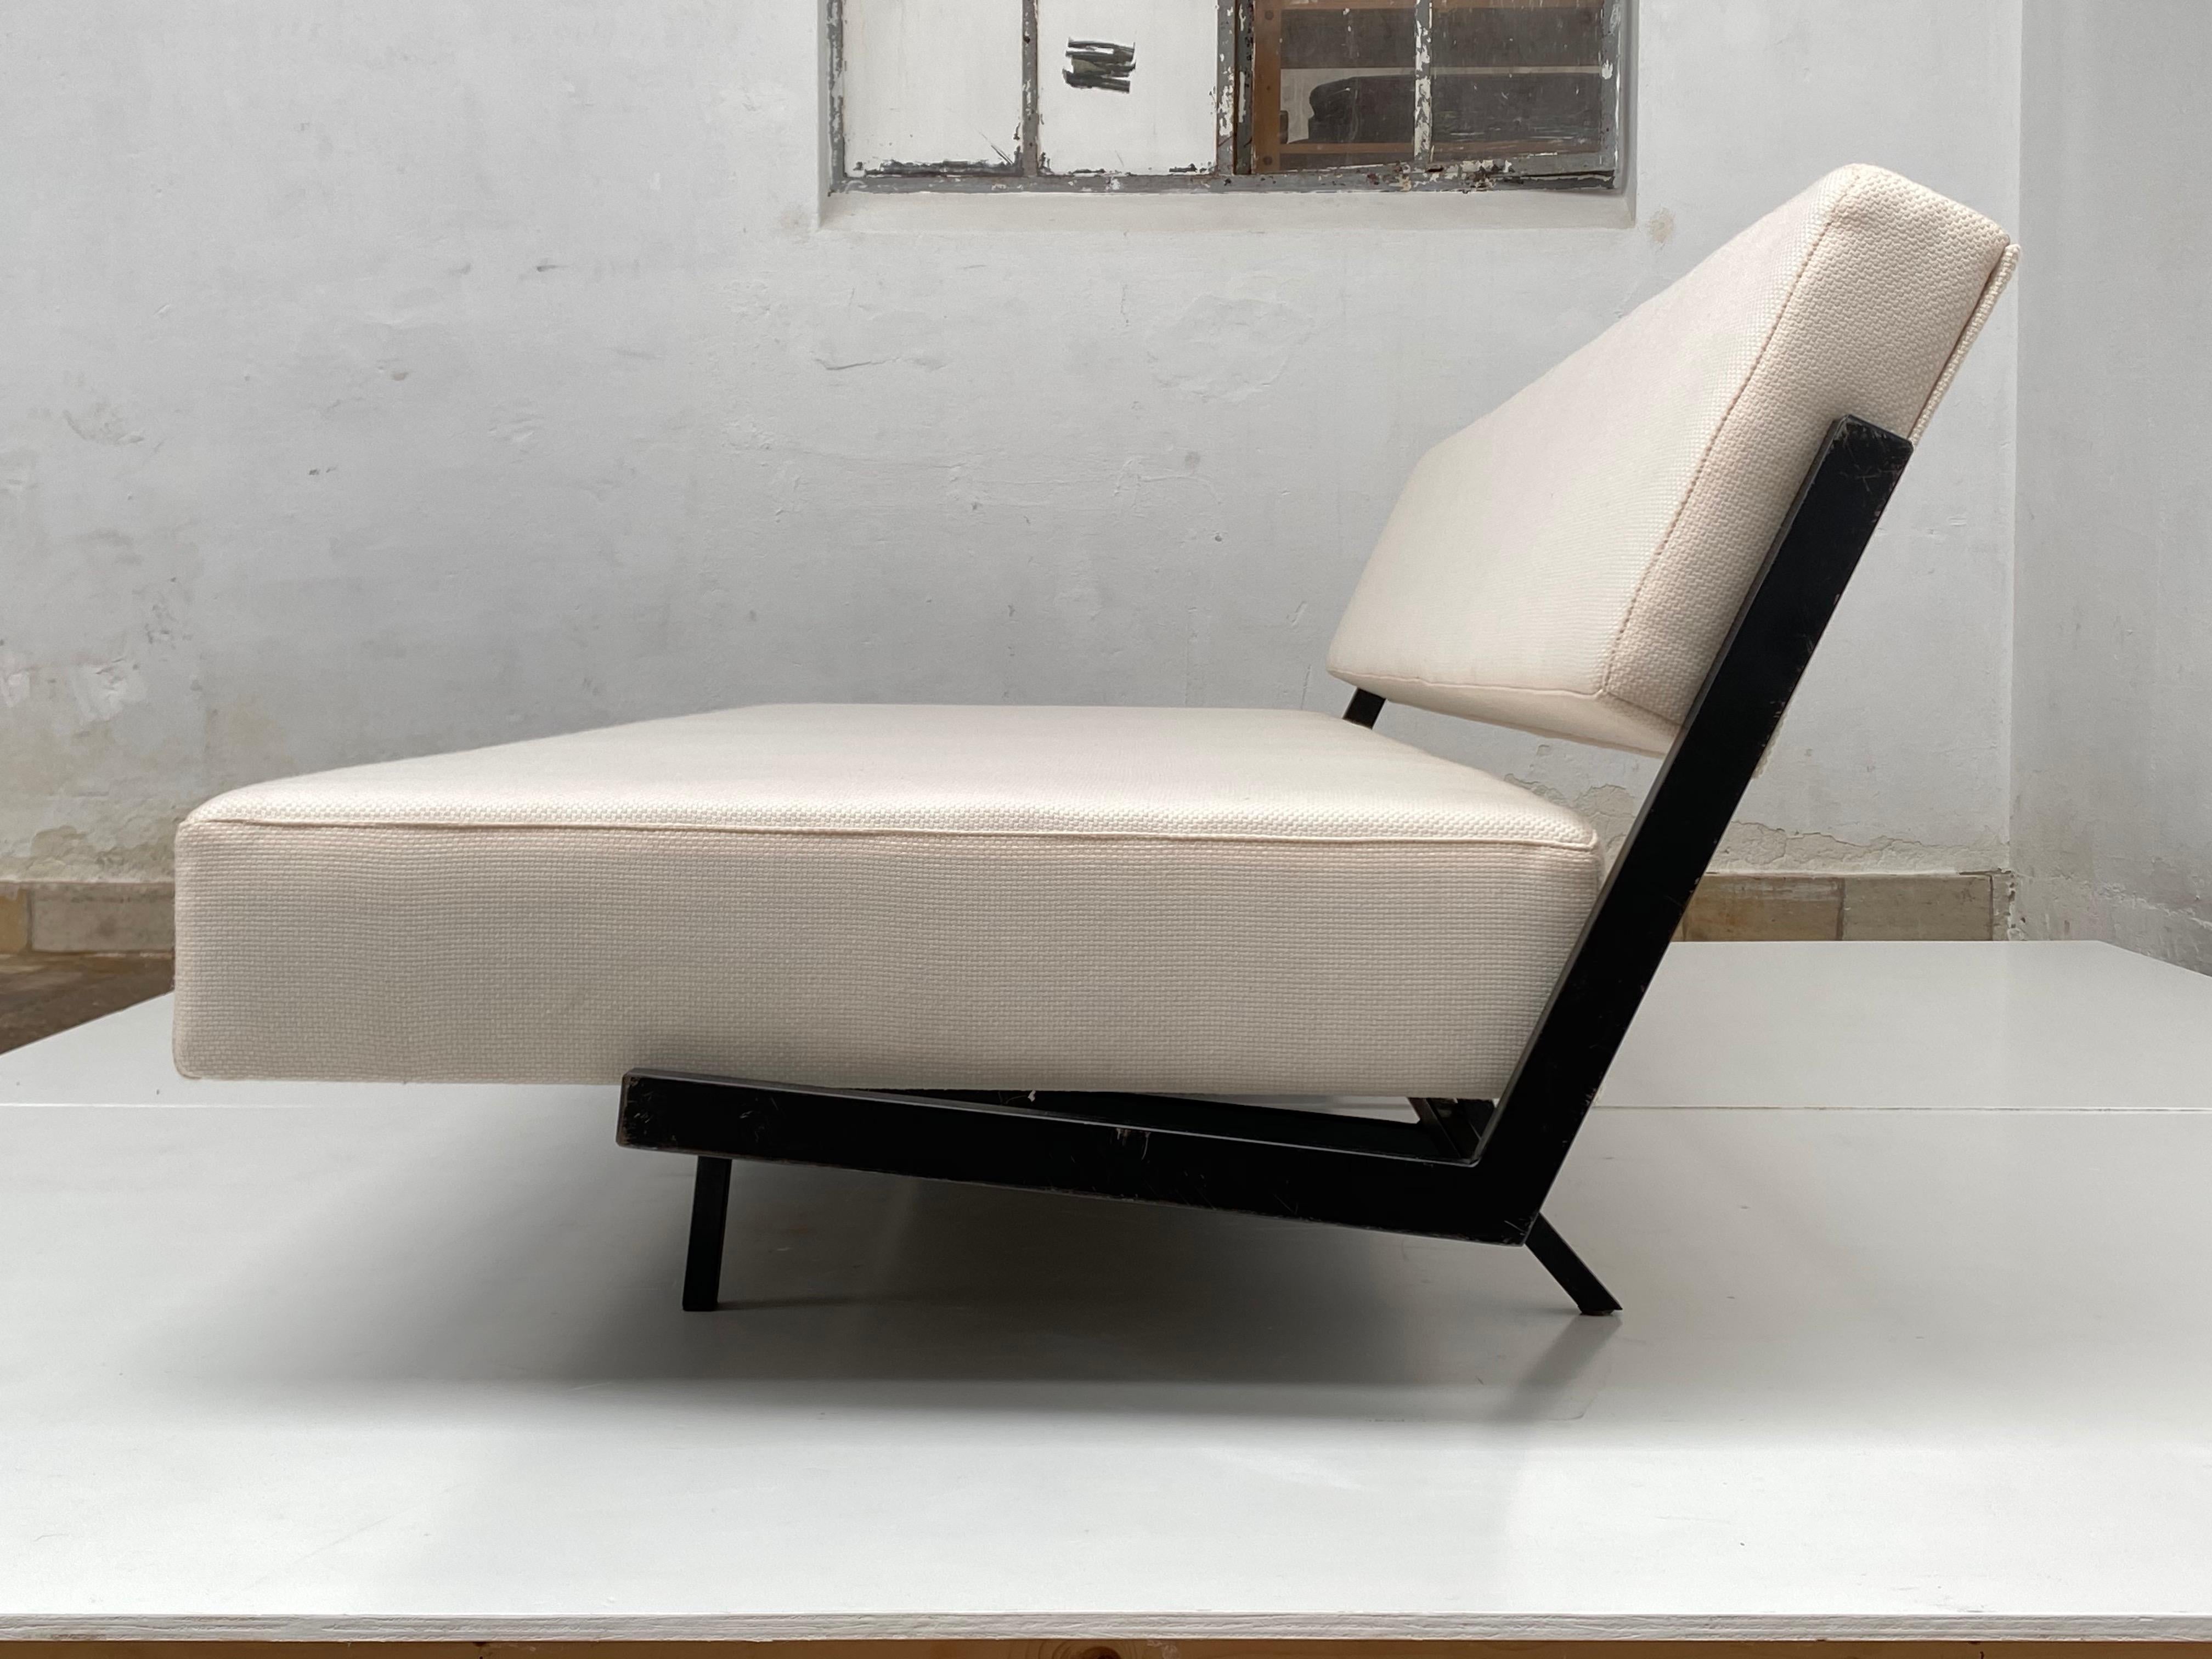 Un canapé-lit hollandais du milieu du siècle, au design minimal et fonctionnel, qui peut être utilisé en deux positions : assise et couchée.

Ce lit de jour a très probablement été produit par la société néerlandaise Royal Auping qui a une longue